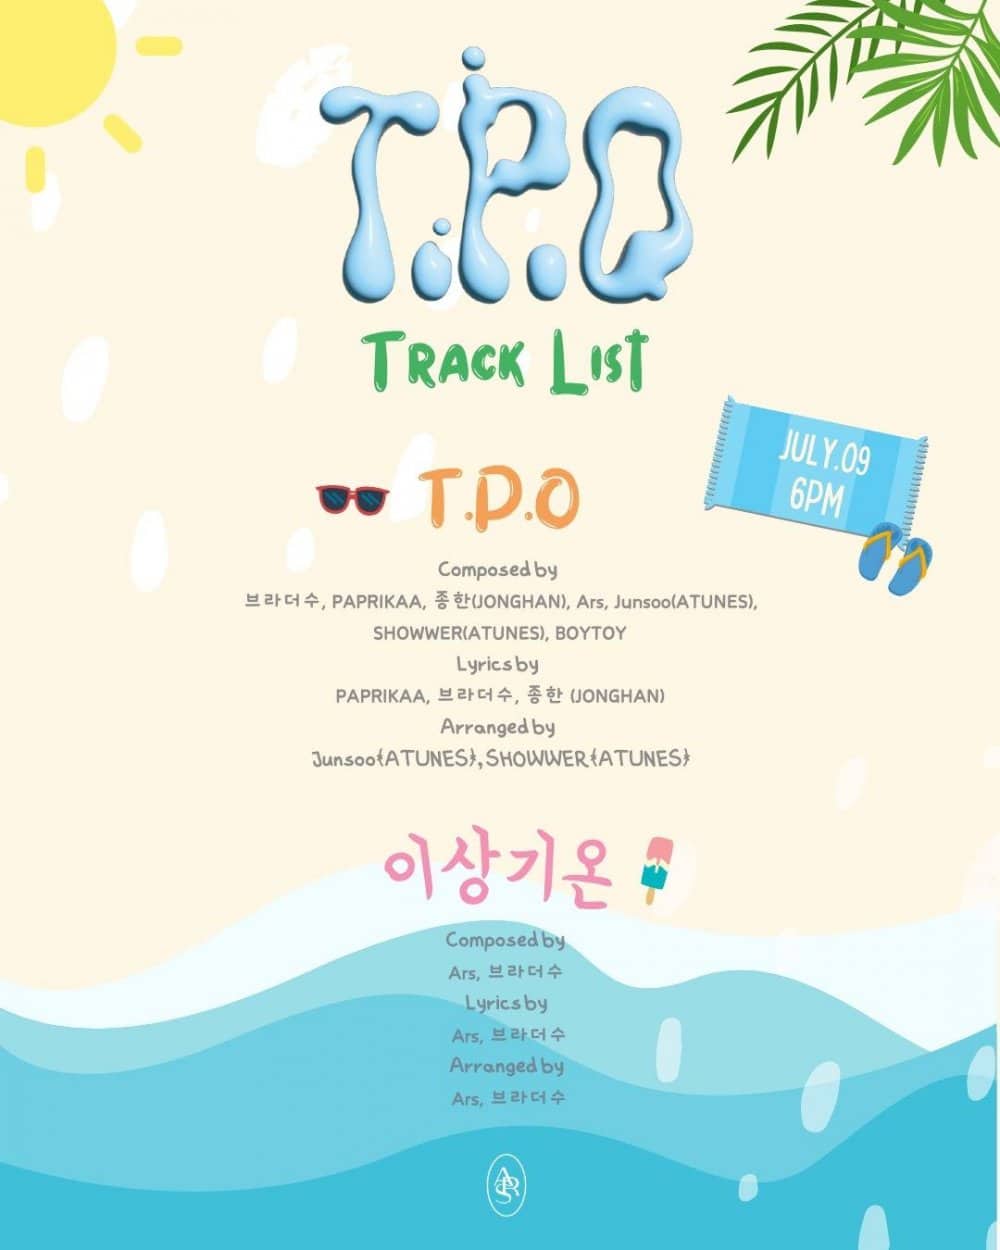 Ёнджэ из GOT7 выпустил треклист и тизеры к сингл-альбому «T.P.O» + объявил о 2-м туре по Азии